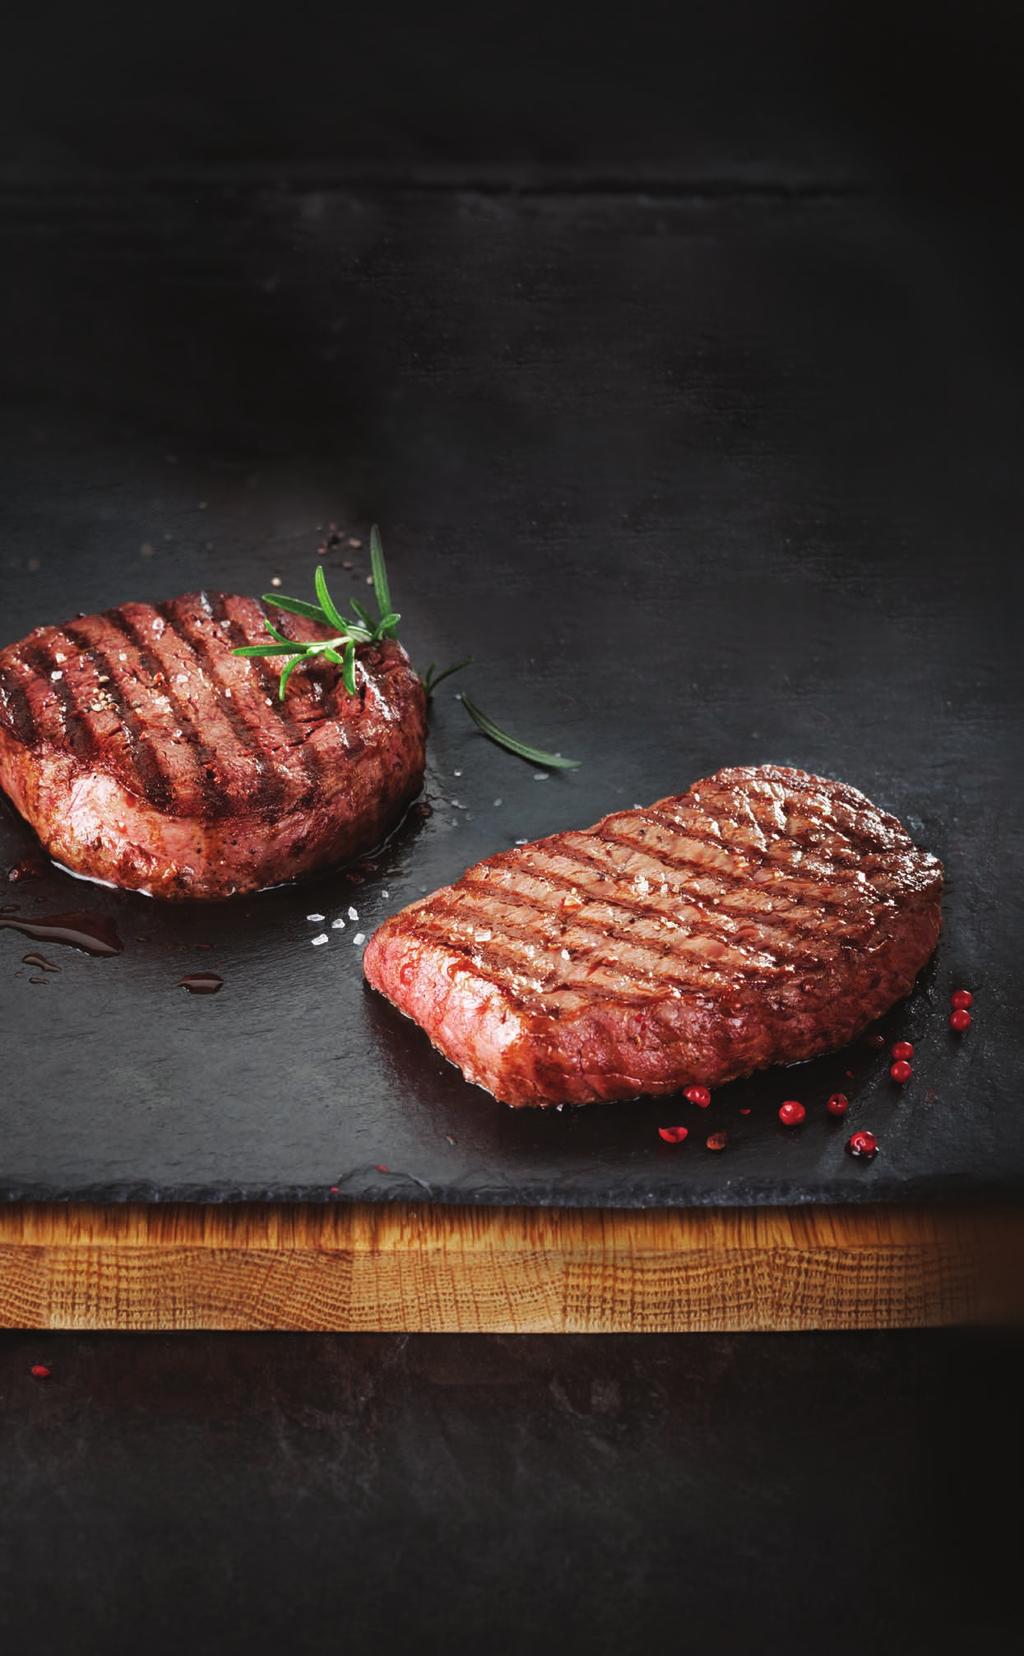 Wybierz stopień wysmażenia: rare stek krwisty, słabo wysmażony, mięso w środku mocno czerwone medium stek średnio wysmażony, mięso w środku różowe i jędrne well done stek bardzo dobrze wysmażony,